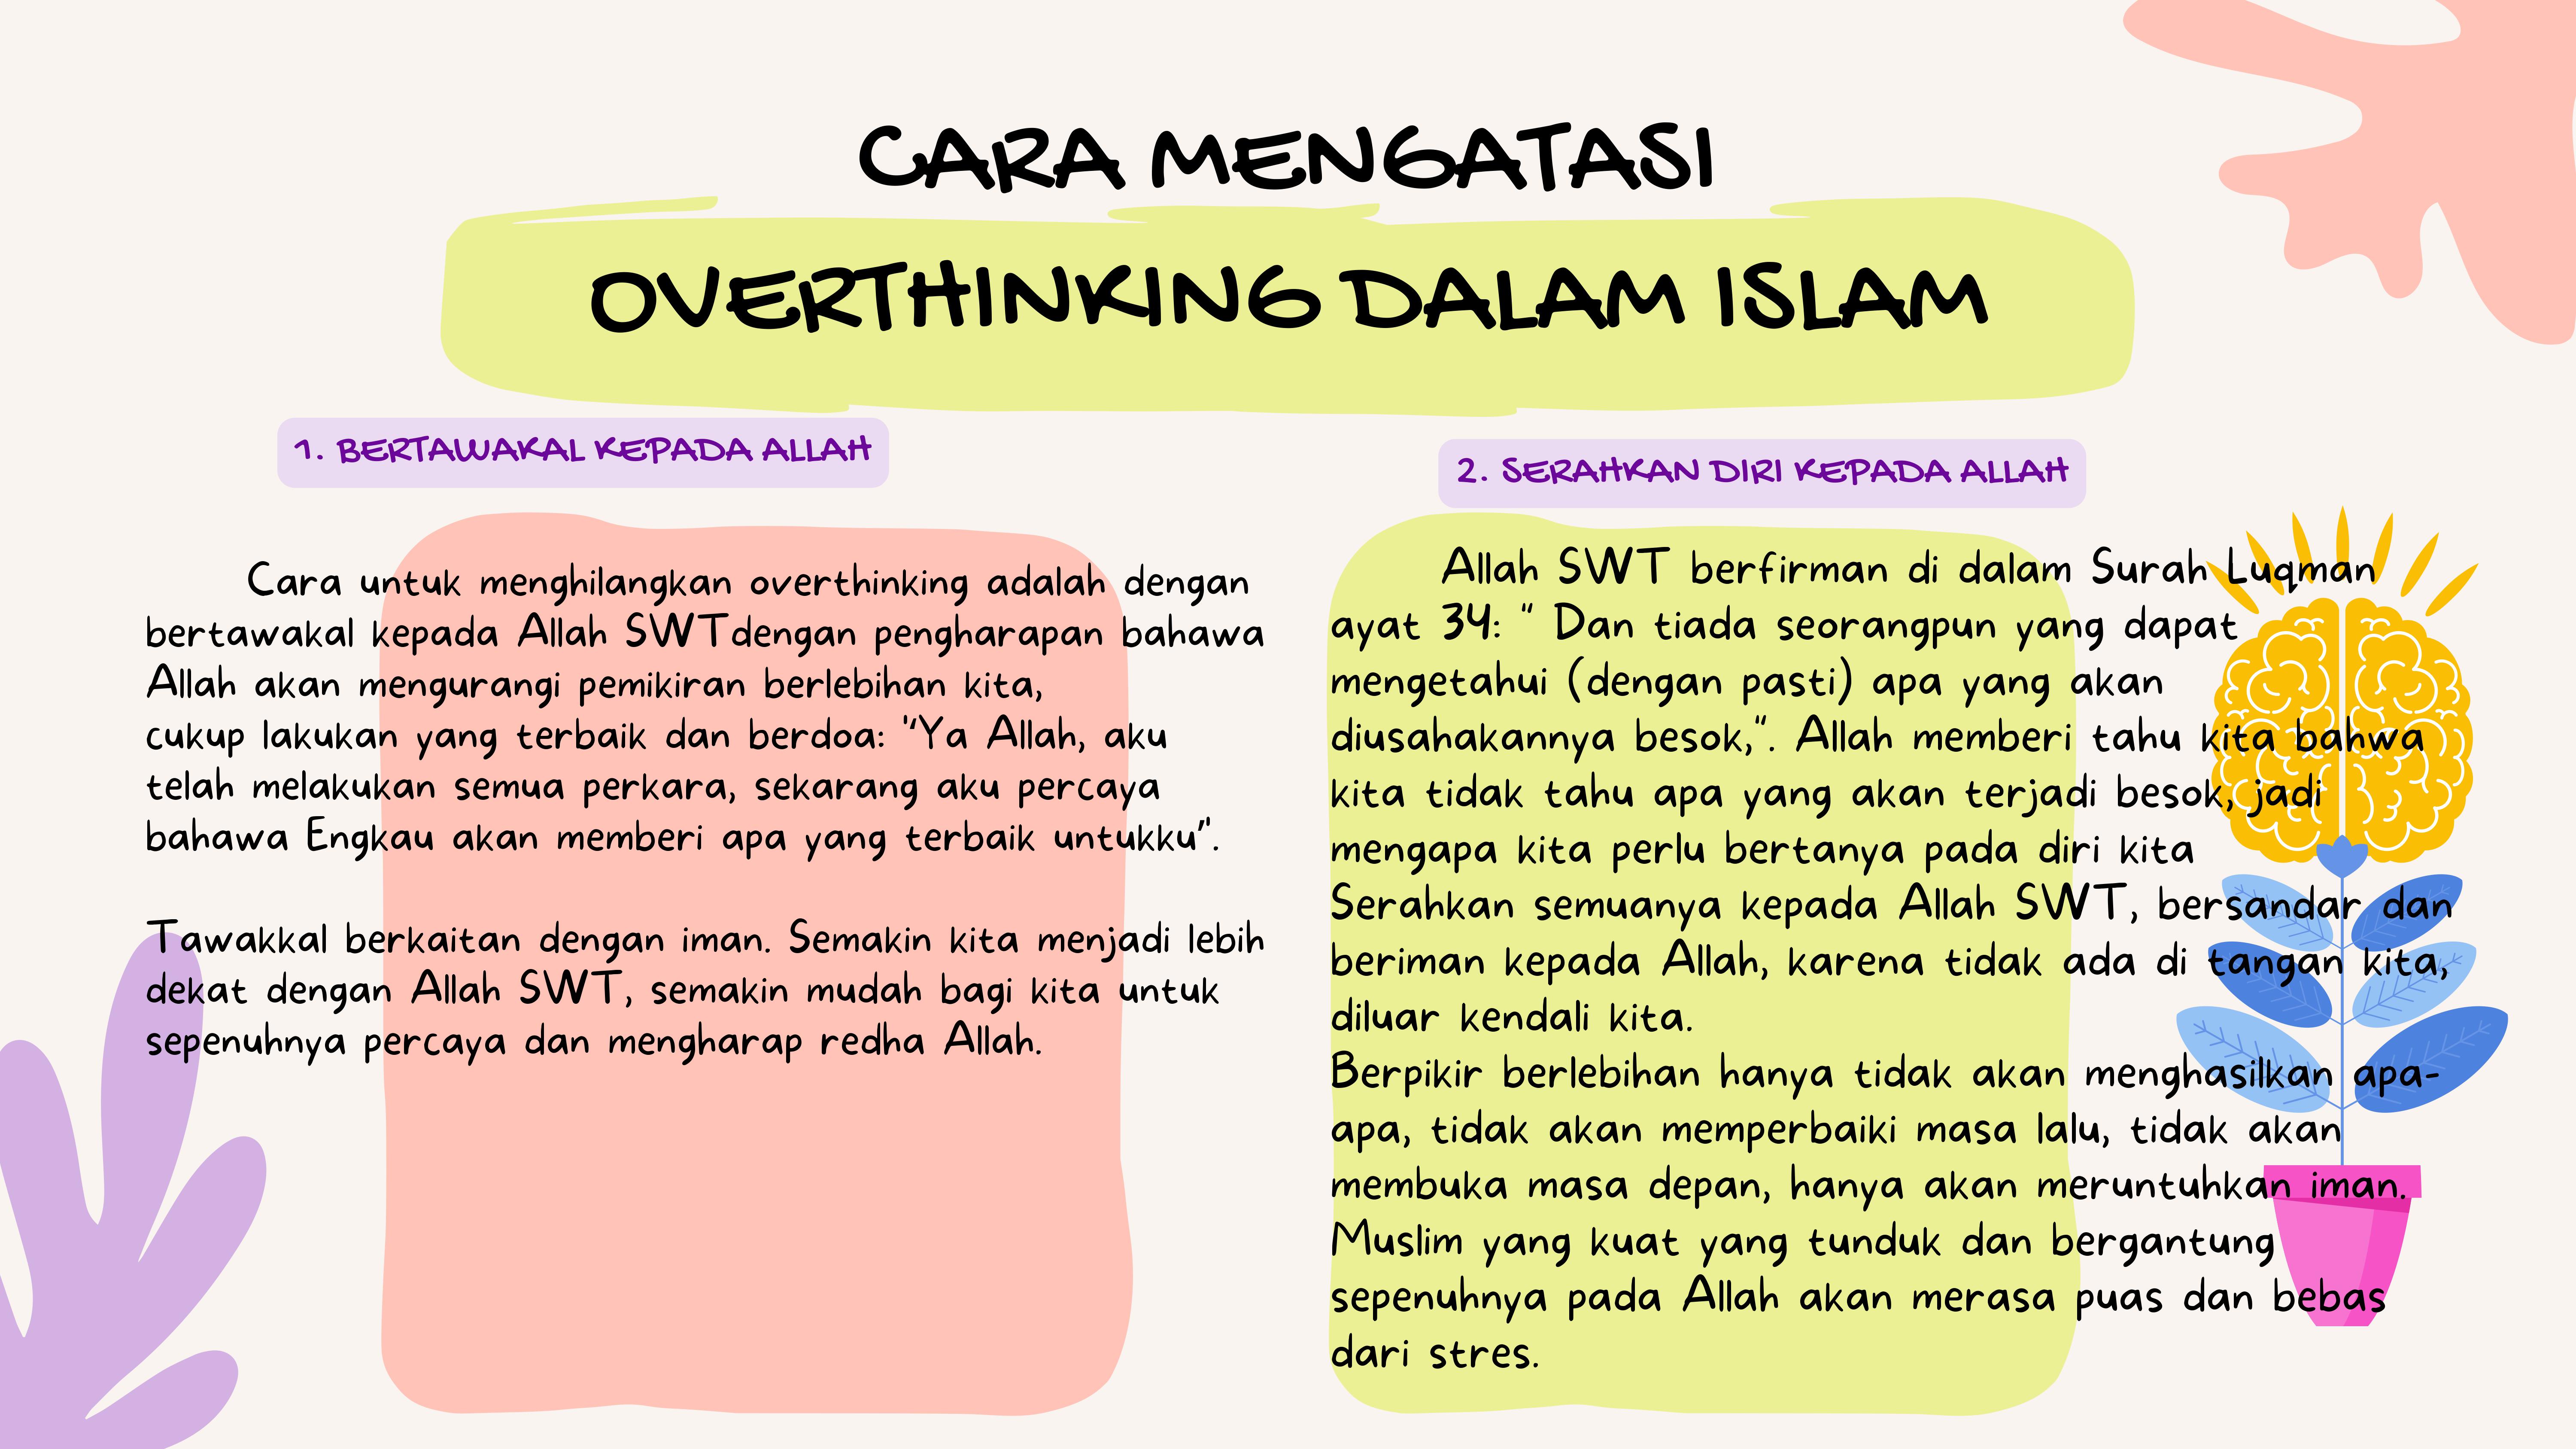 CARA MENGATASI OVERTHINKING DALAM ISLAM 3